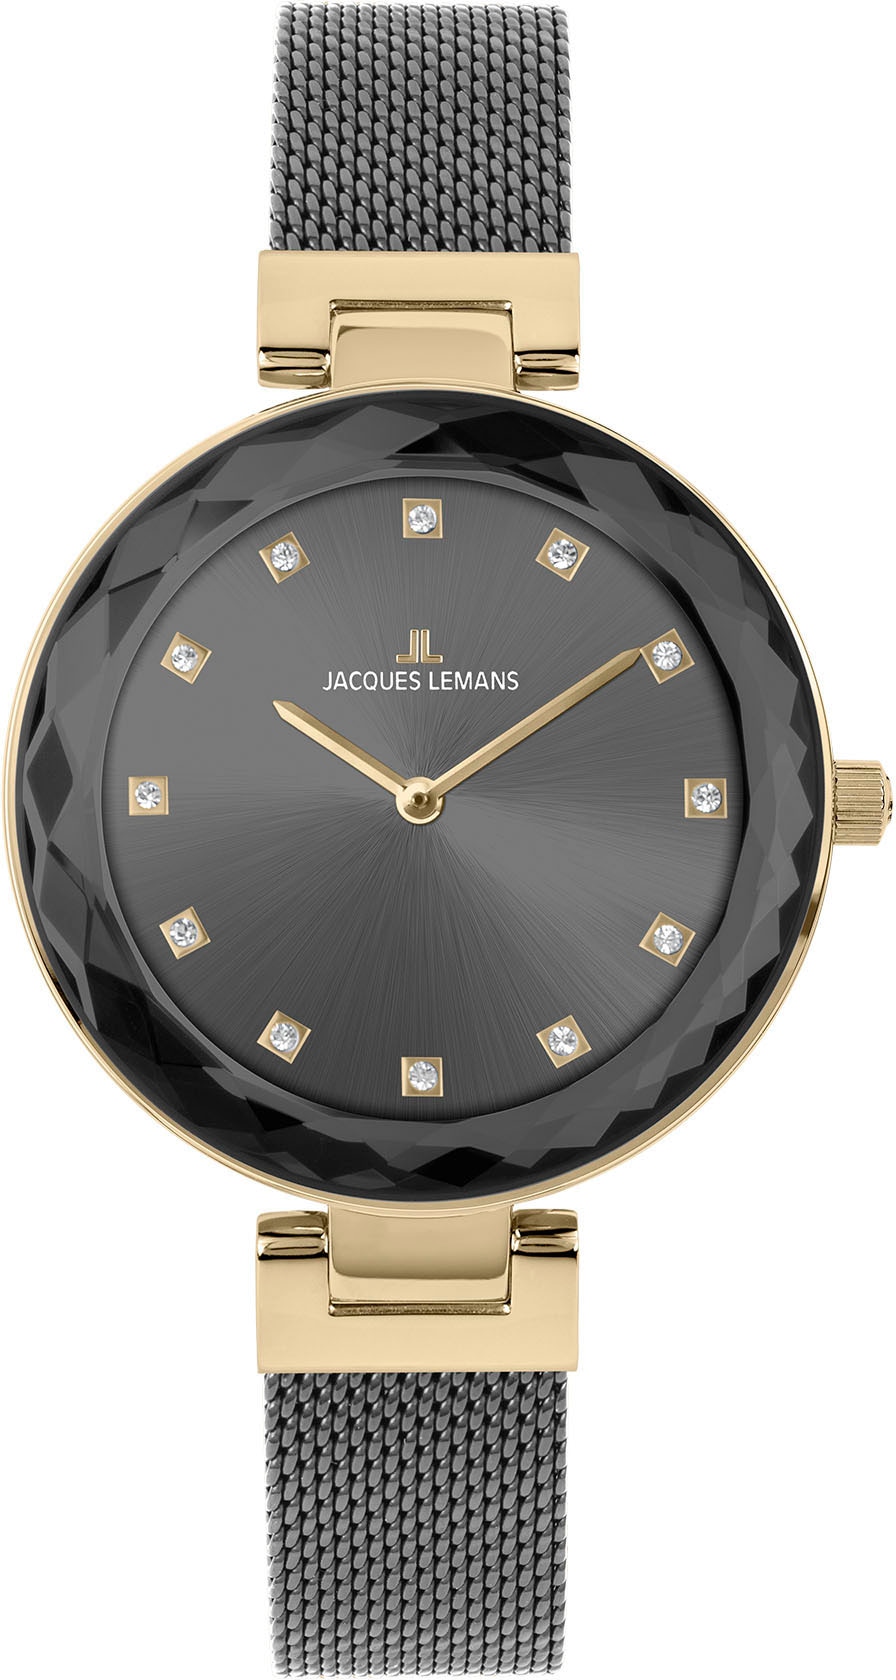 Jacques Lemans günstig kaufen ▻ Uhren